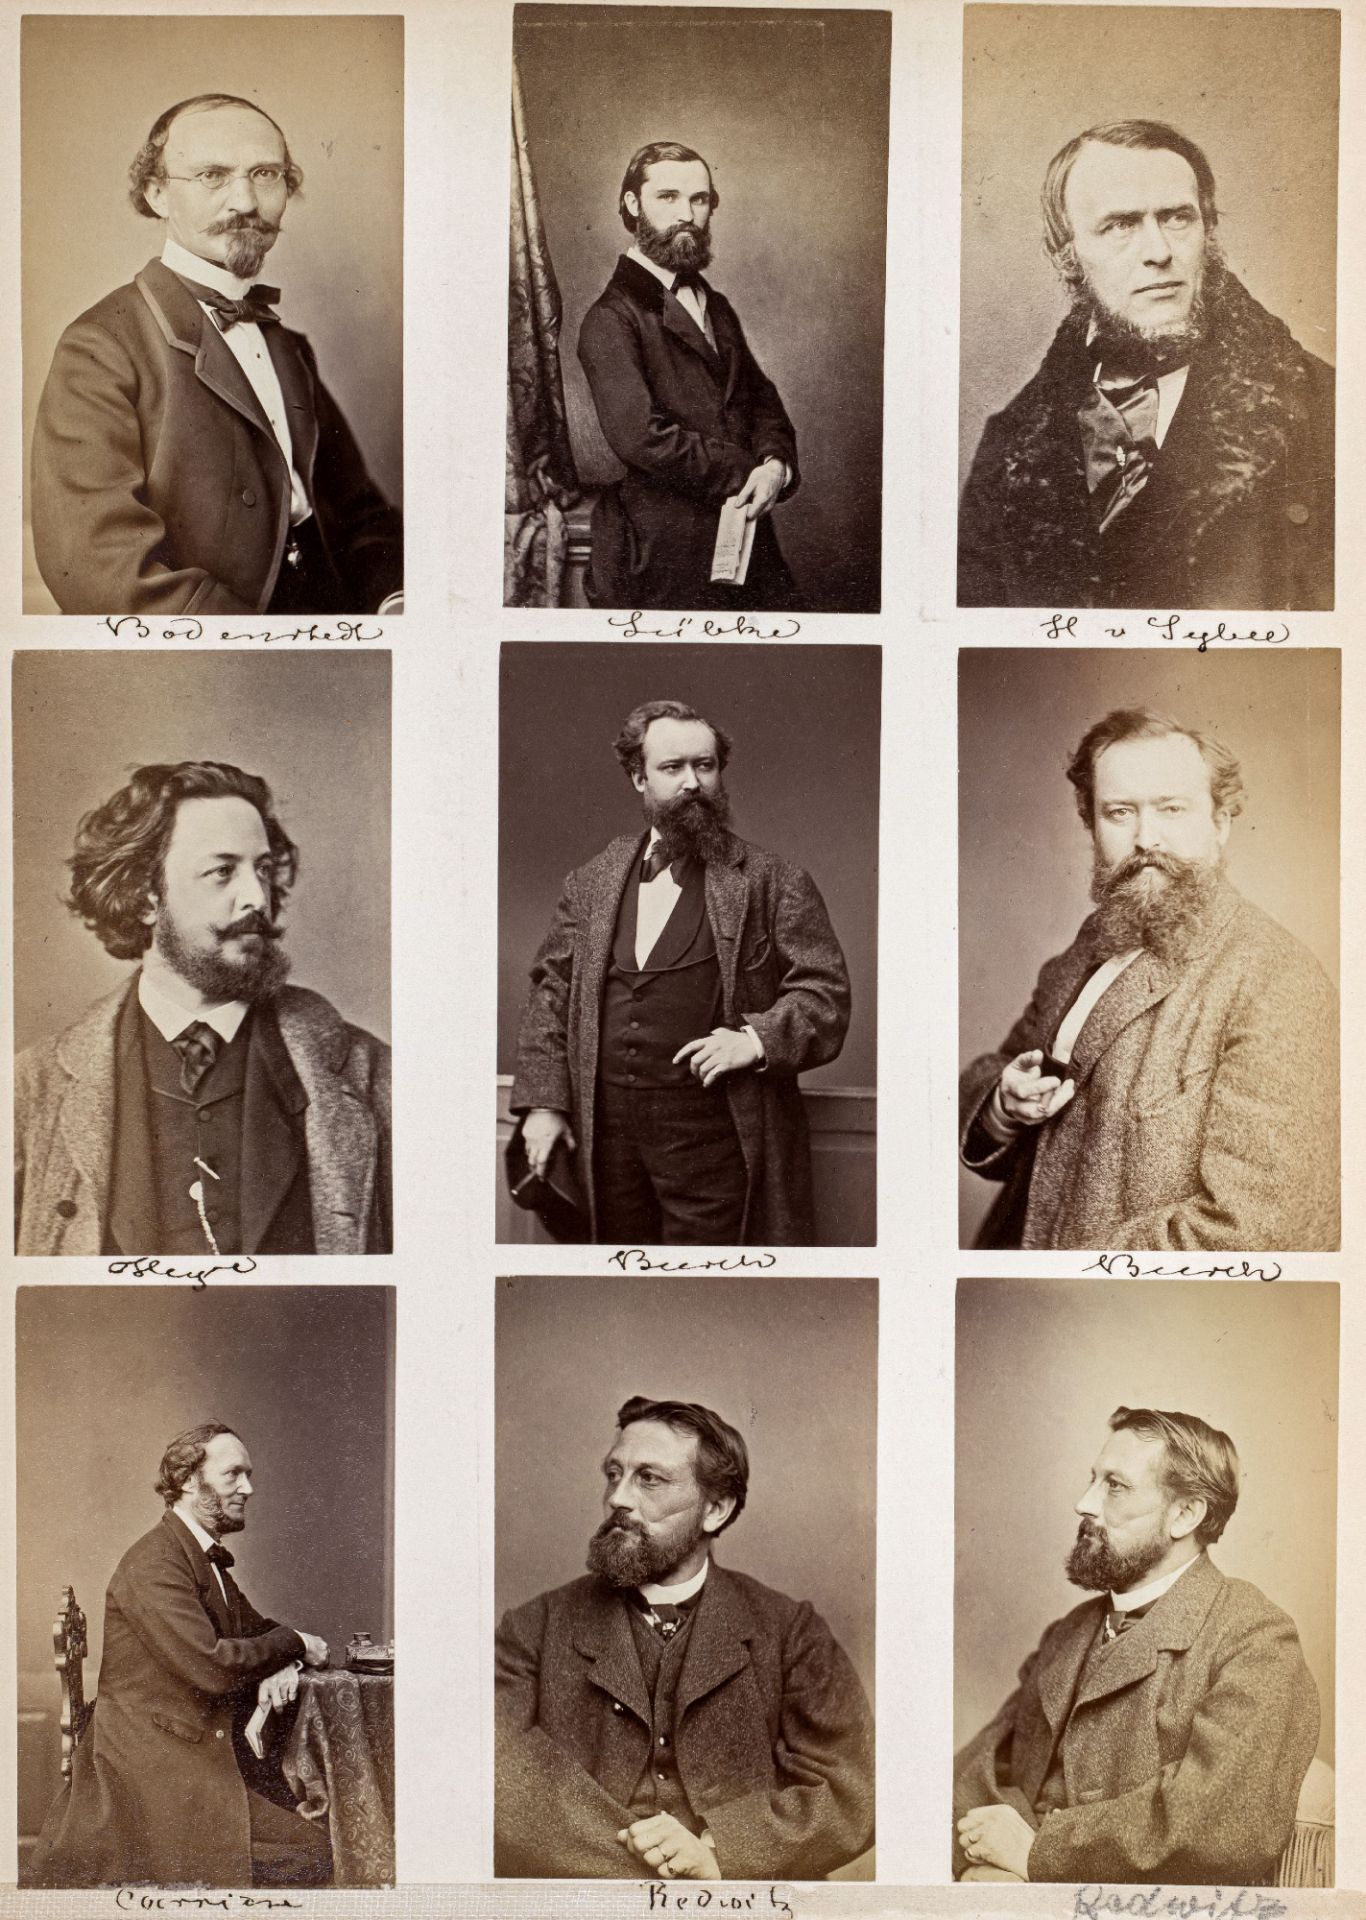 FOTOGRAFIE | Hanfstaengl, Franz | 1807 Baiernrain bei Tölz - 1877 München - Image 18 of 25